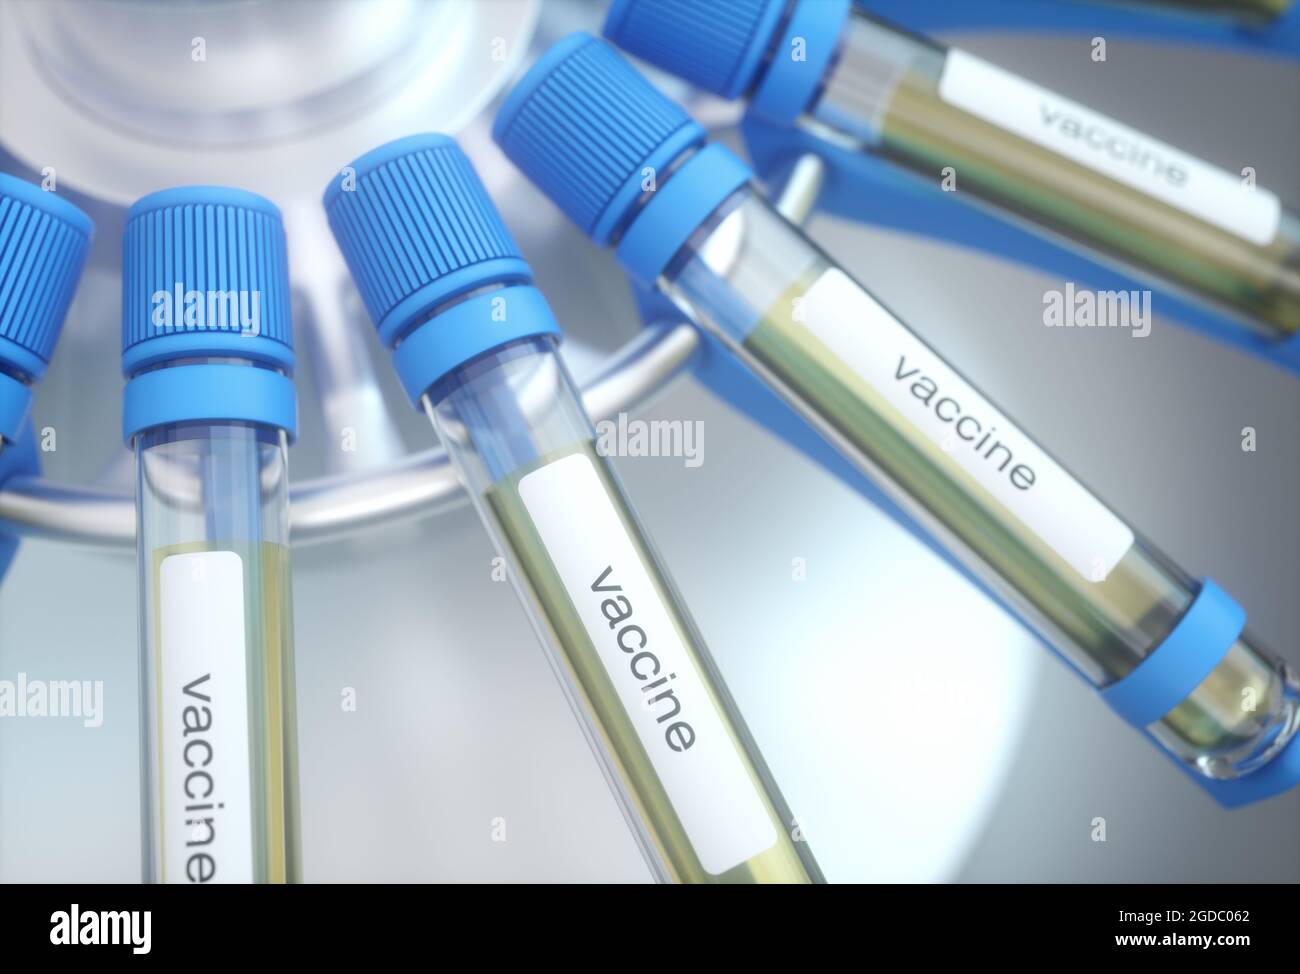 Tubo de ensayo con etiqueta de vacuna. Ilustración de la imagen conceptual 3D. Foto de stock